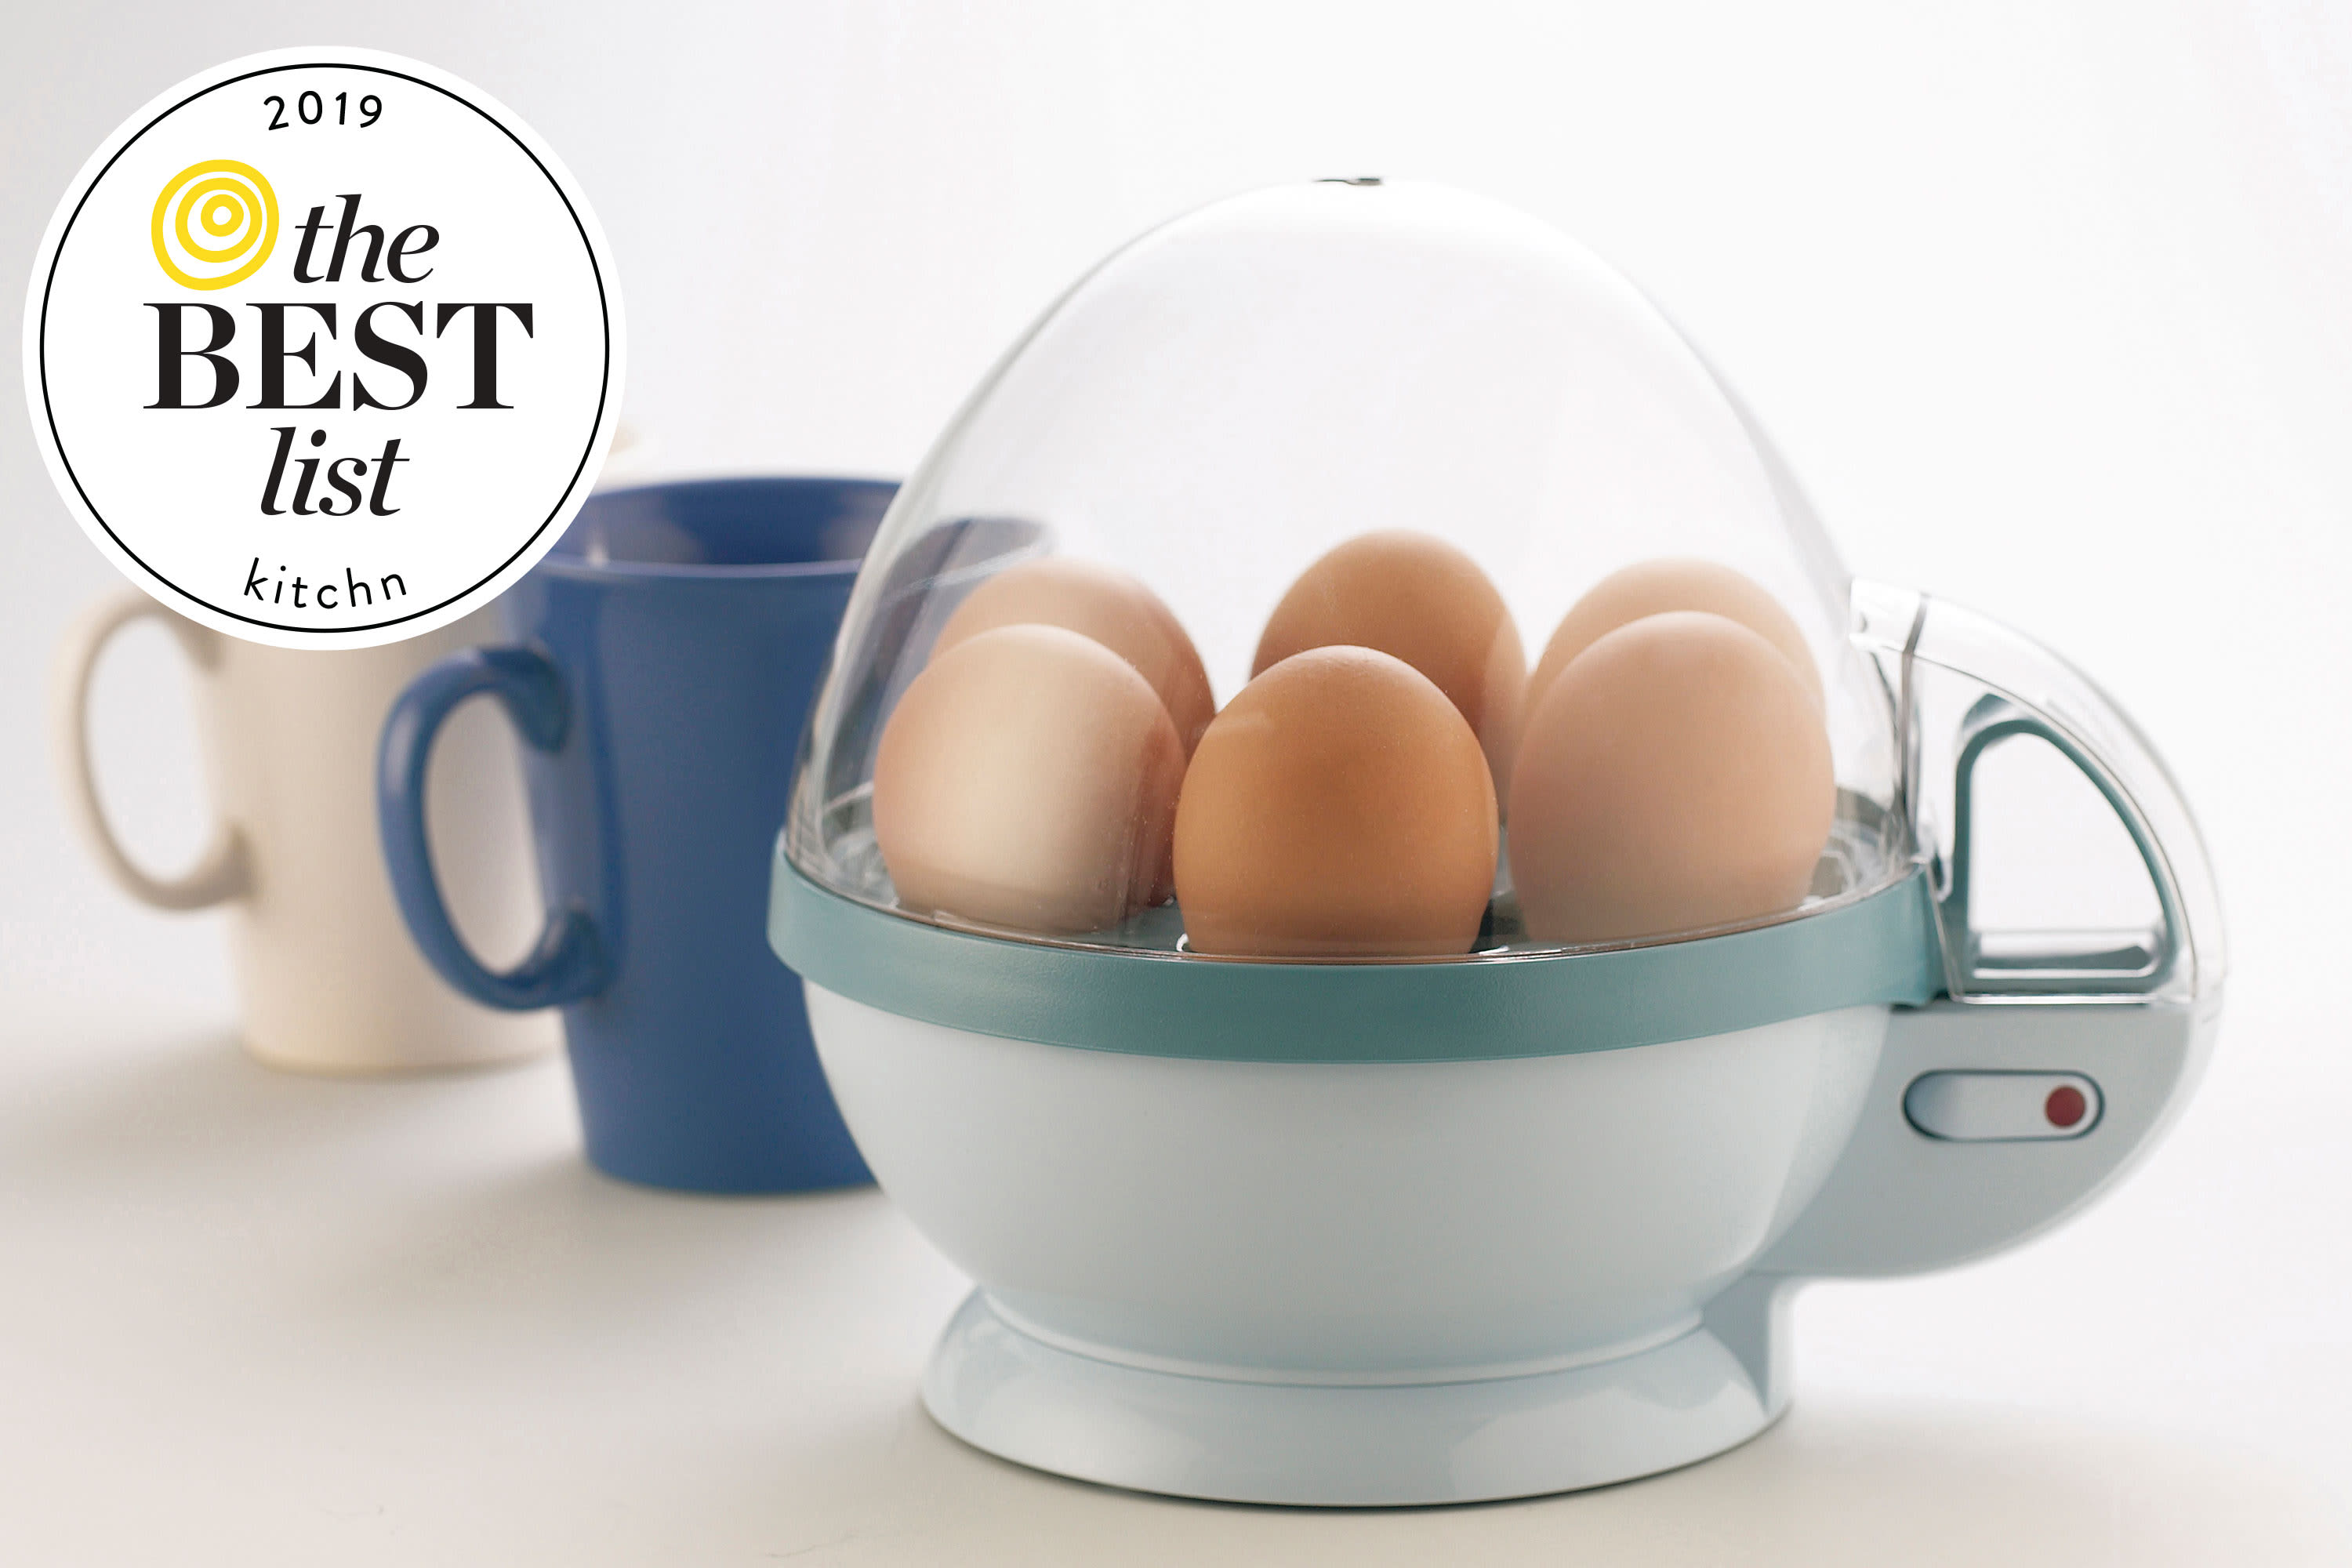 Best Egg Cooker - 2019